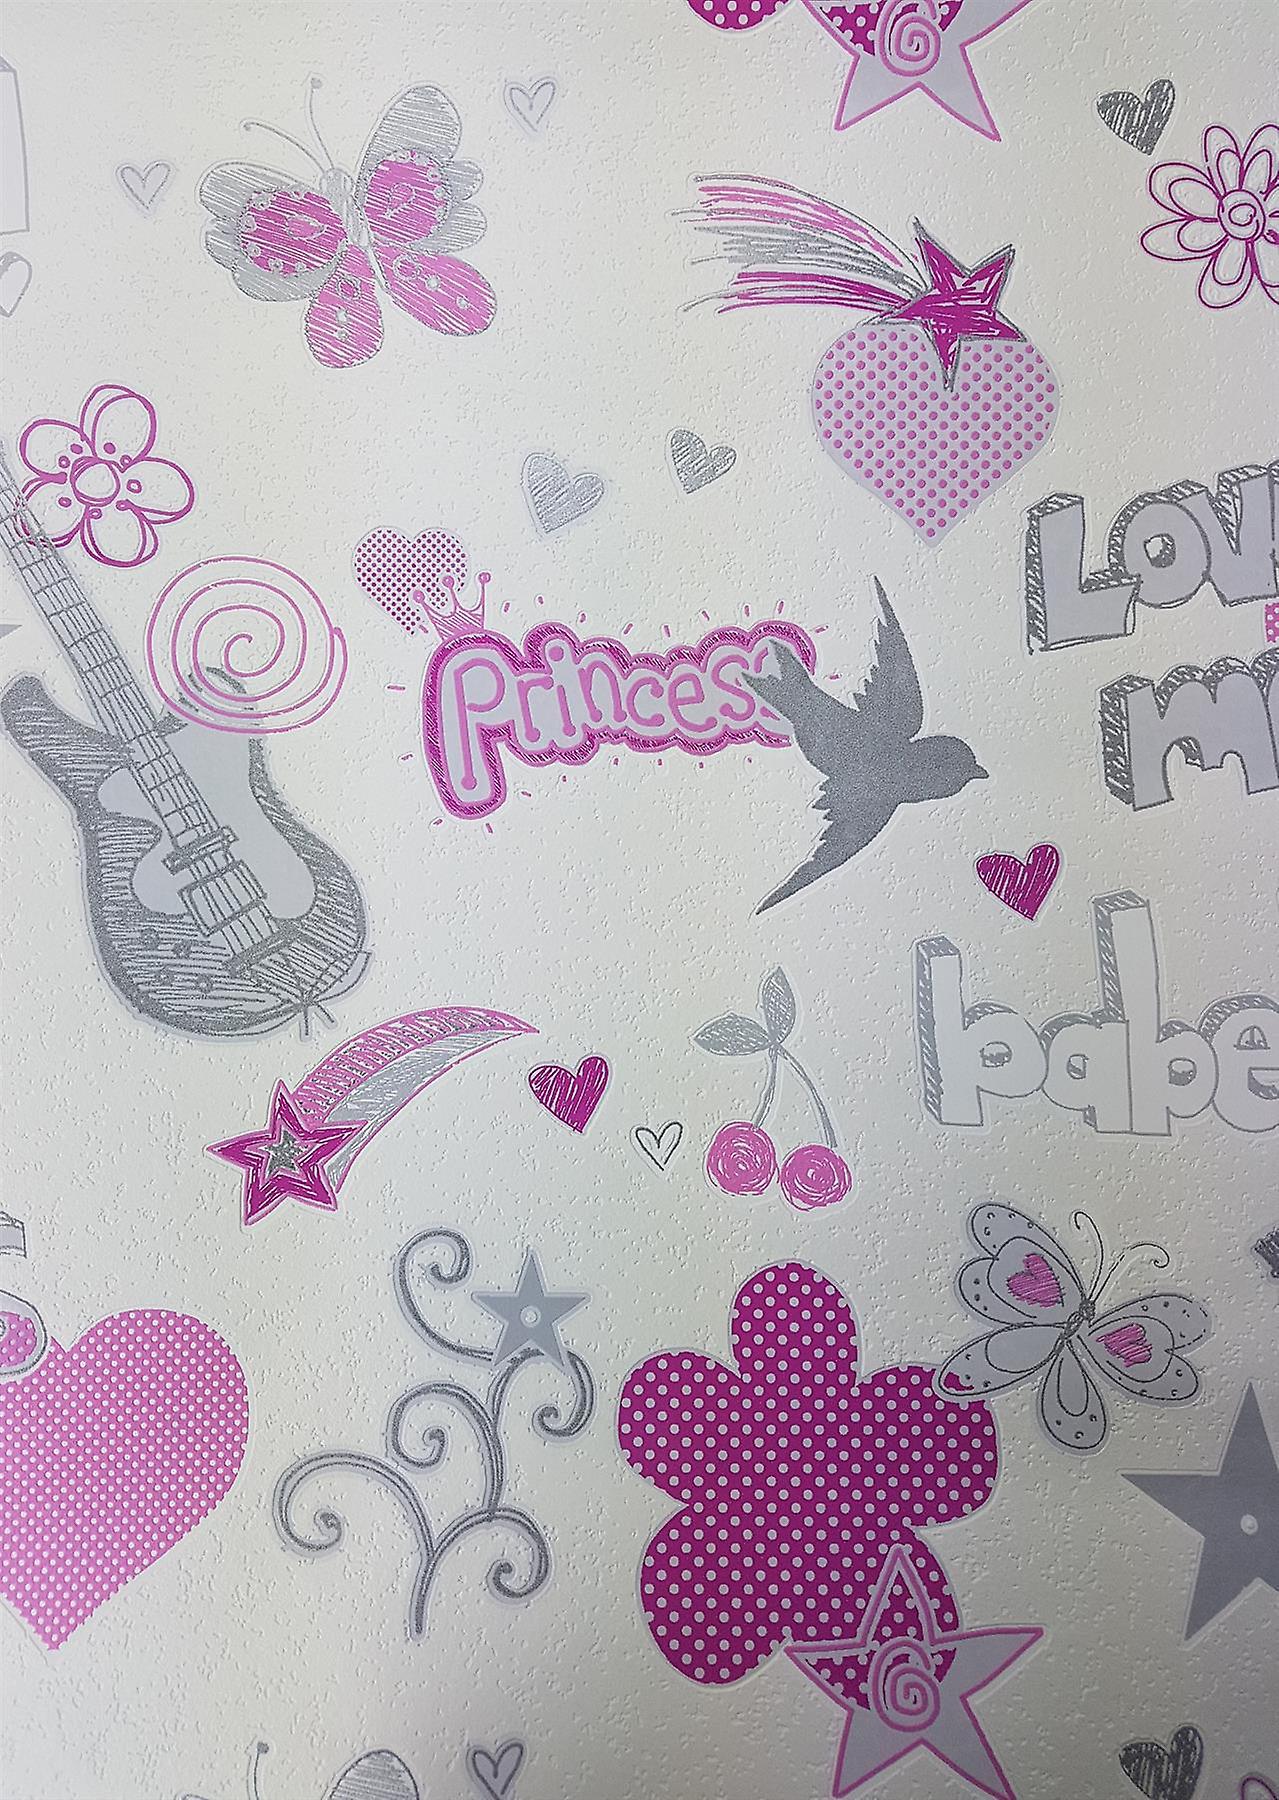 Dekobeleuchtung Garten Inspirierend Girls Love Hearts Stars butterflies Flowers Wallpaper Pink White Grey Glitter